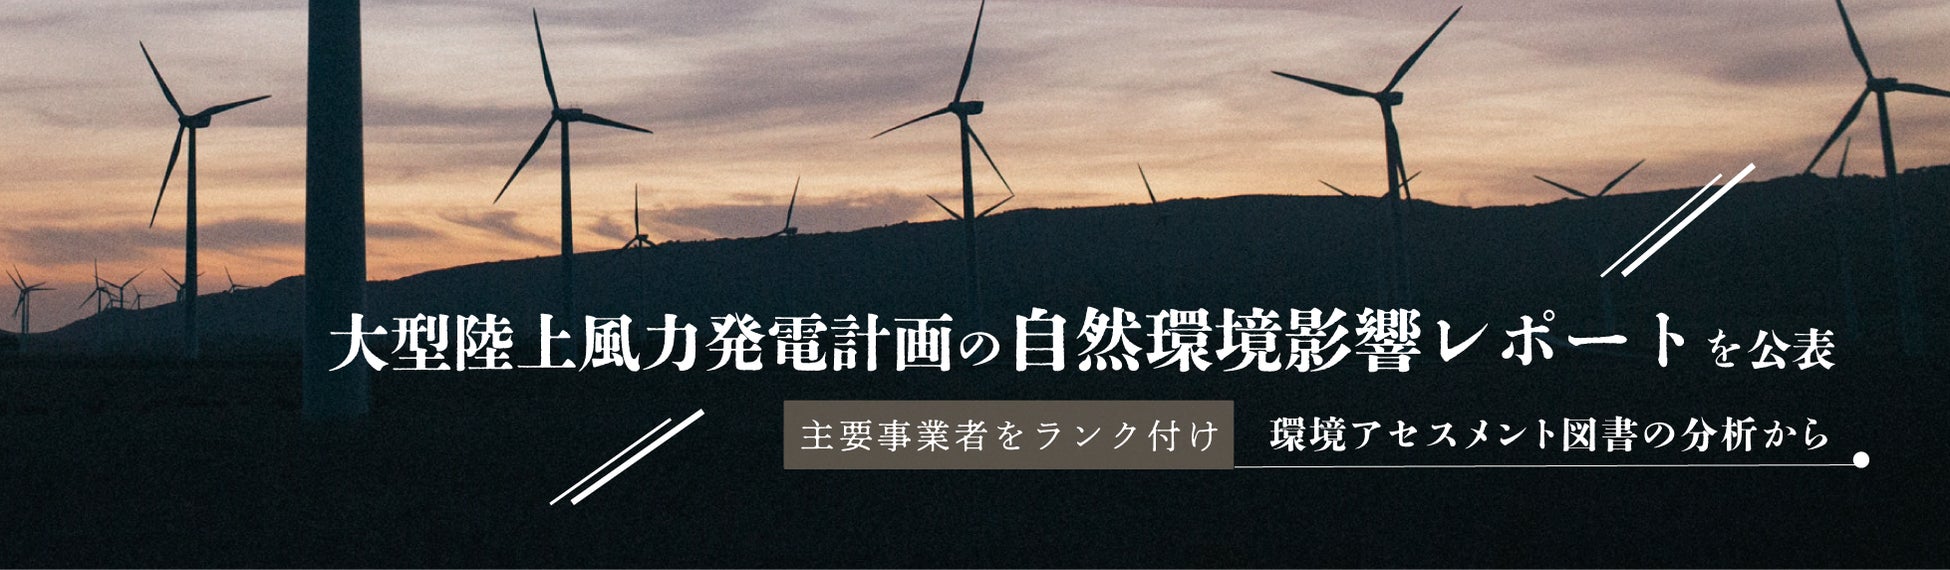 大型陸上風力発電計画の自然環境影響レポートを公表のサブ画像1